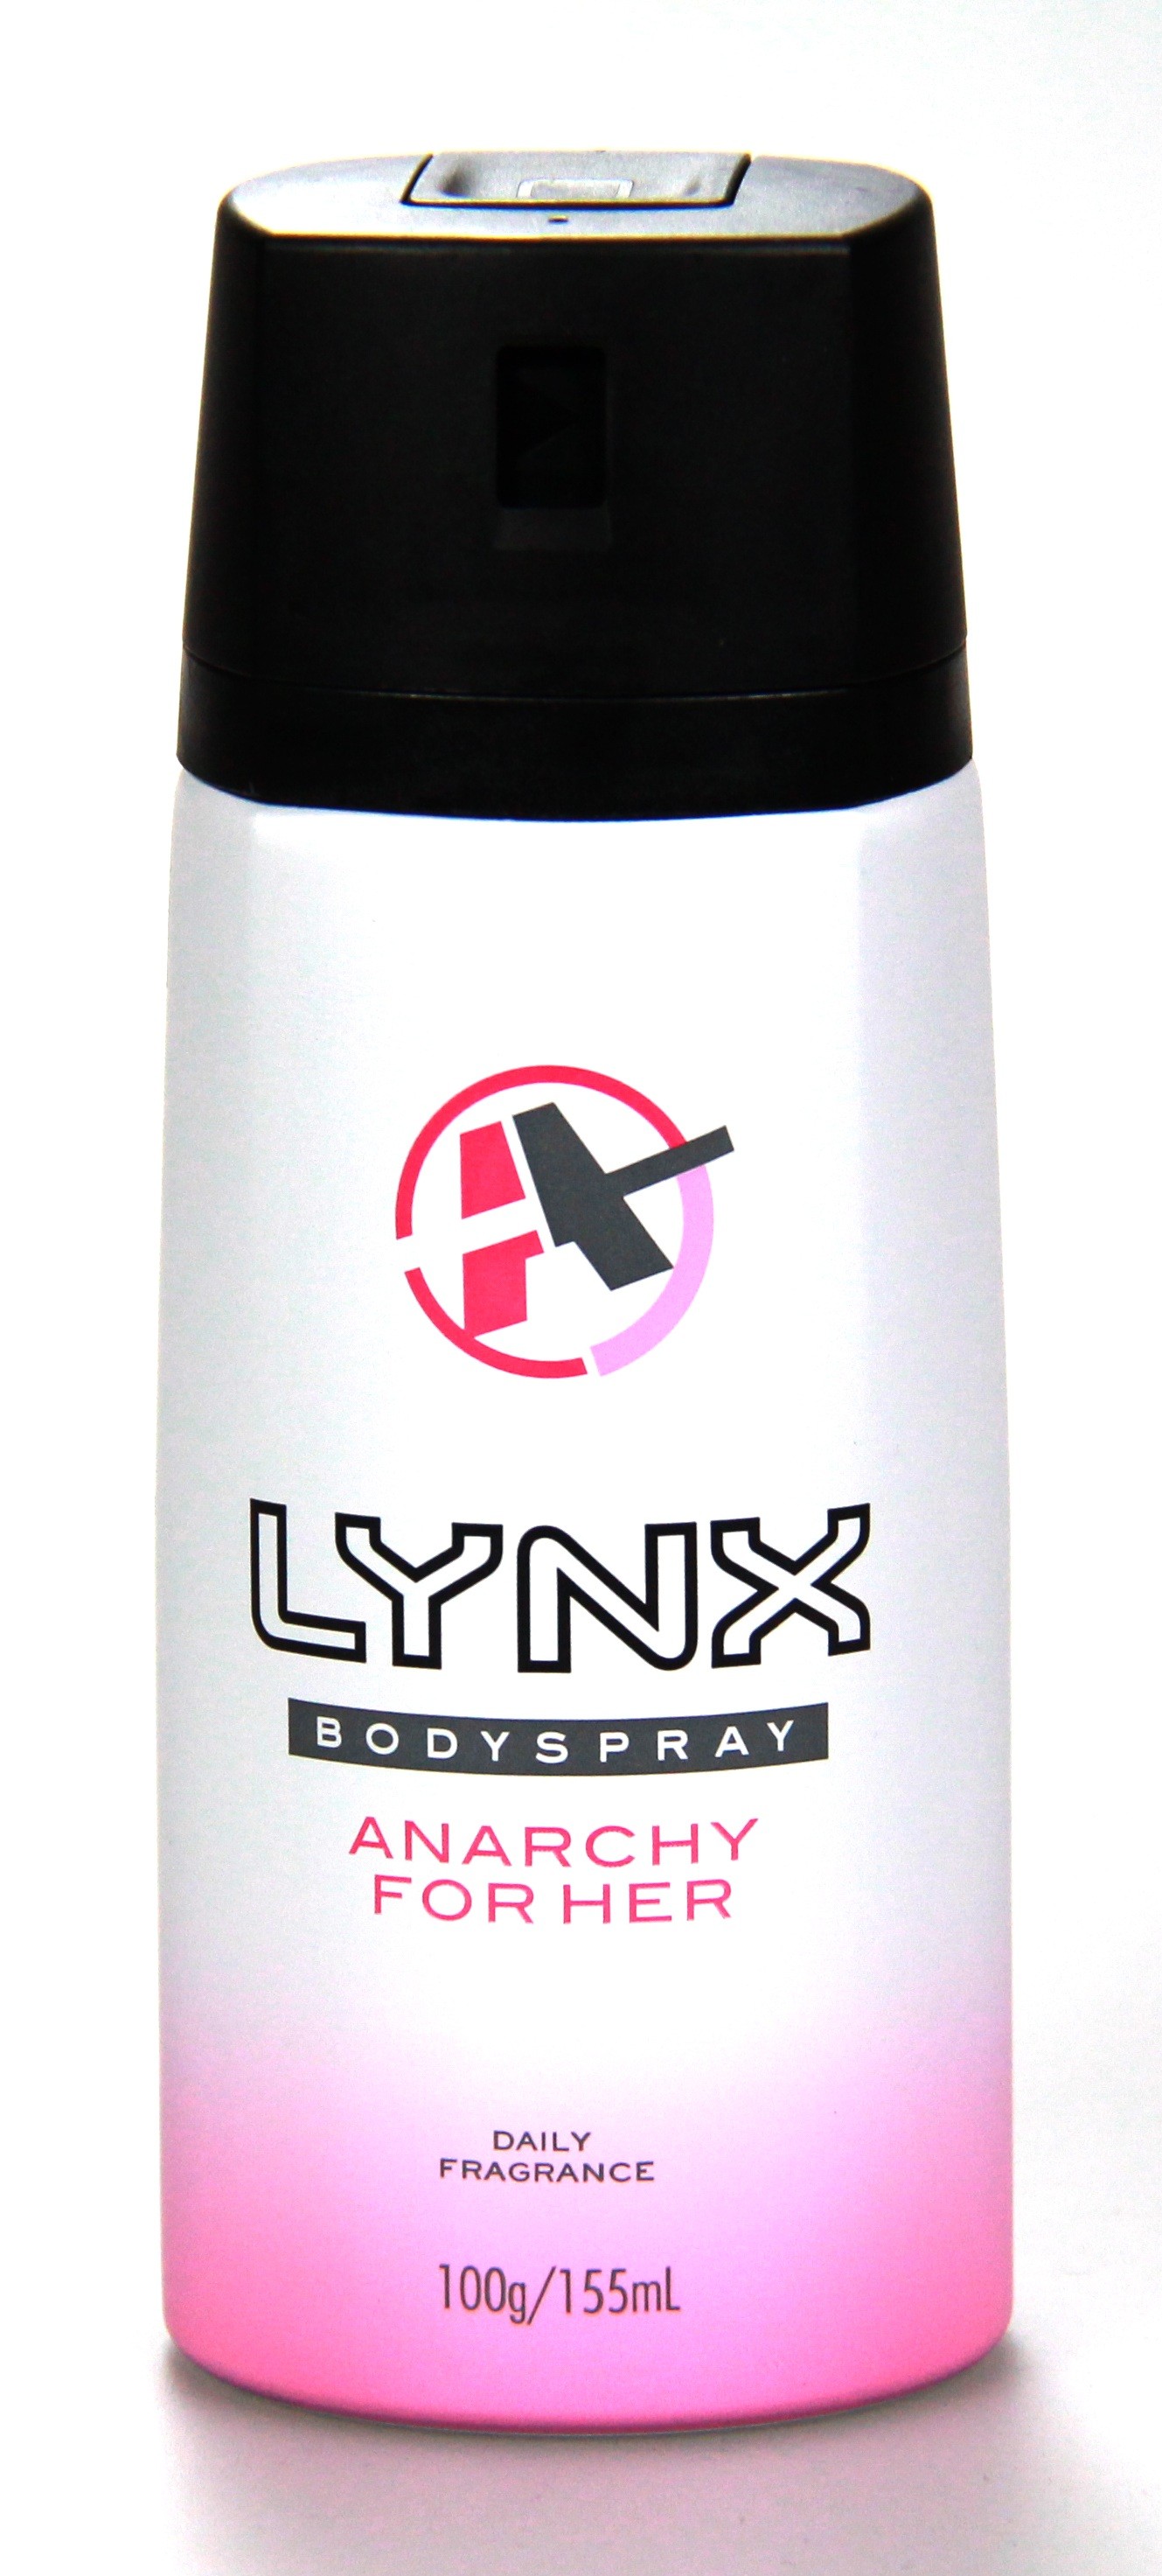 Lynx W Anarchy - Products PeleGuy Distribution Pty Ltd 1300 377 341